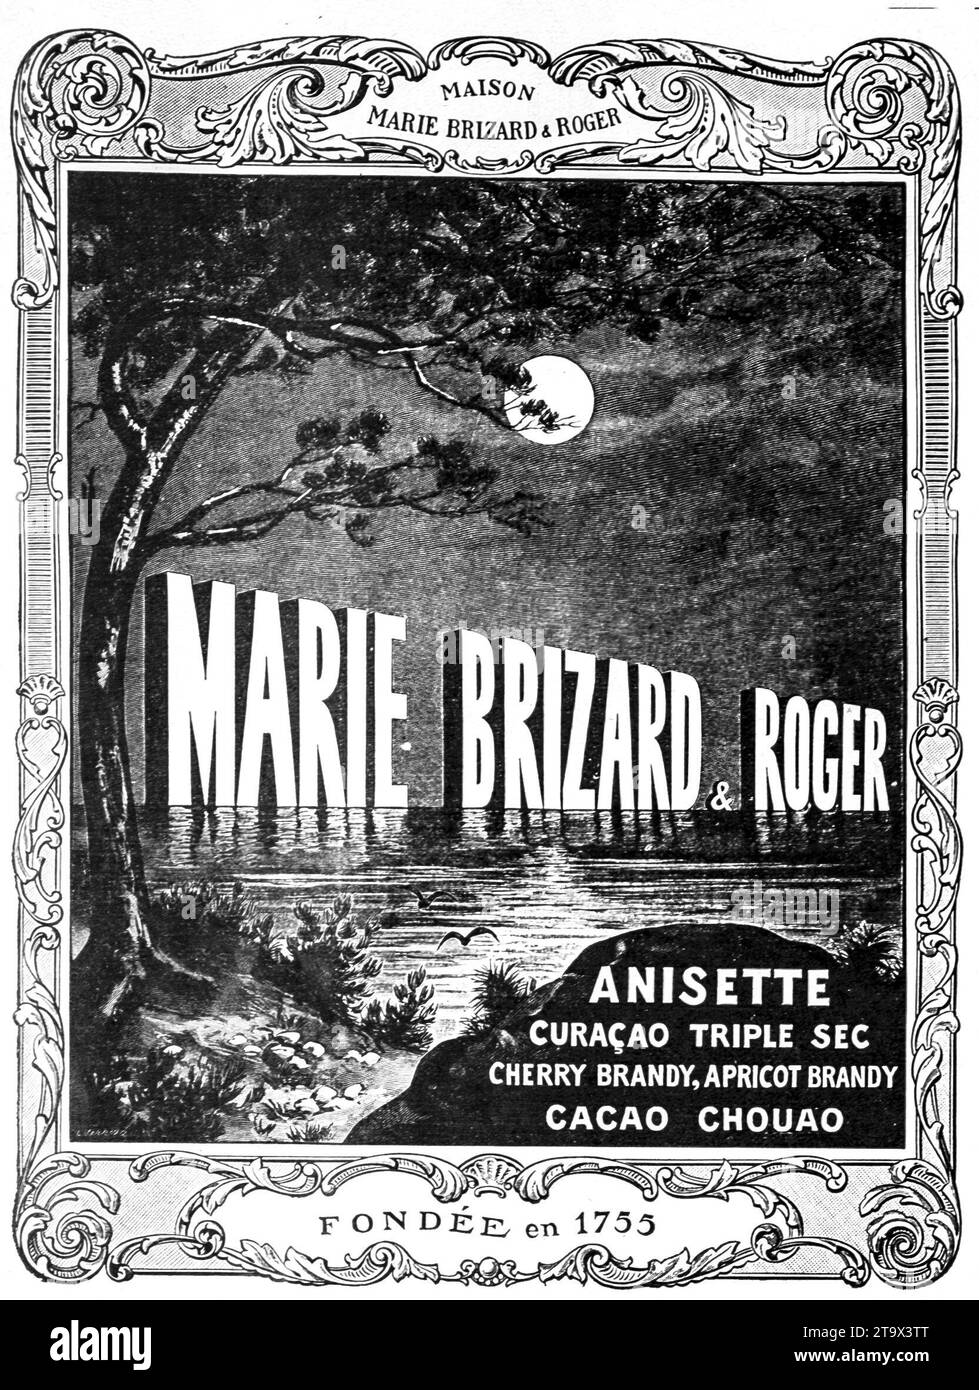 Publicité historique des années 1920 de Marie Brizard & Roger, fondée en 1755, présentant une variété de spiritueux, y compris Anisette, Curaçao Triple sec, et eaux-de-vie de fruits. Banque D'Images